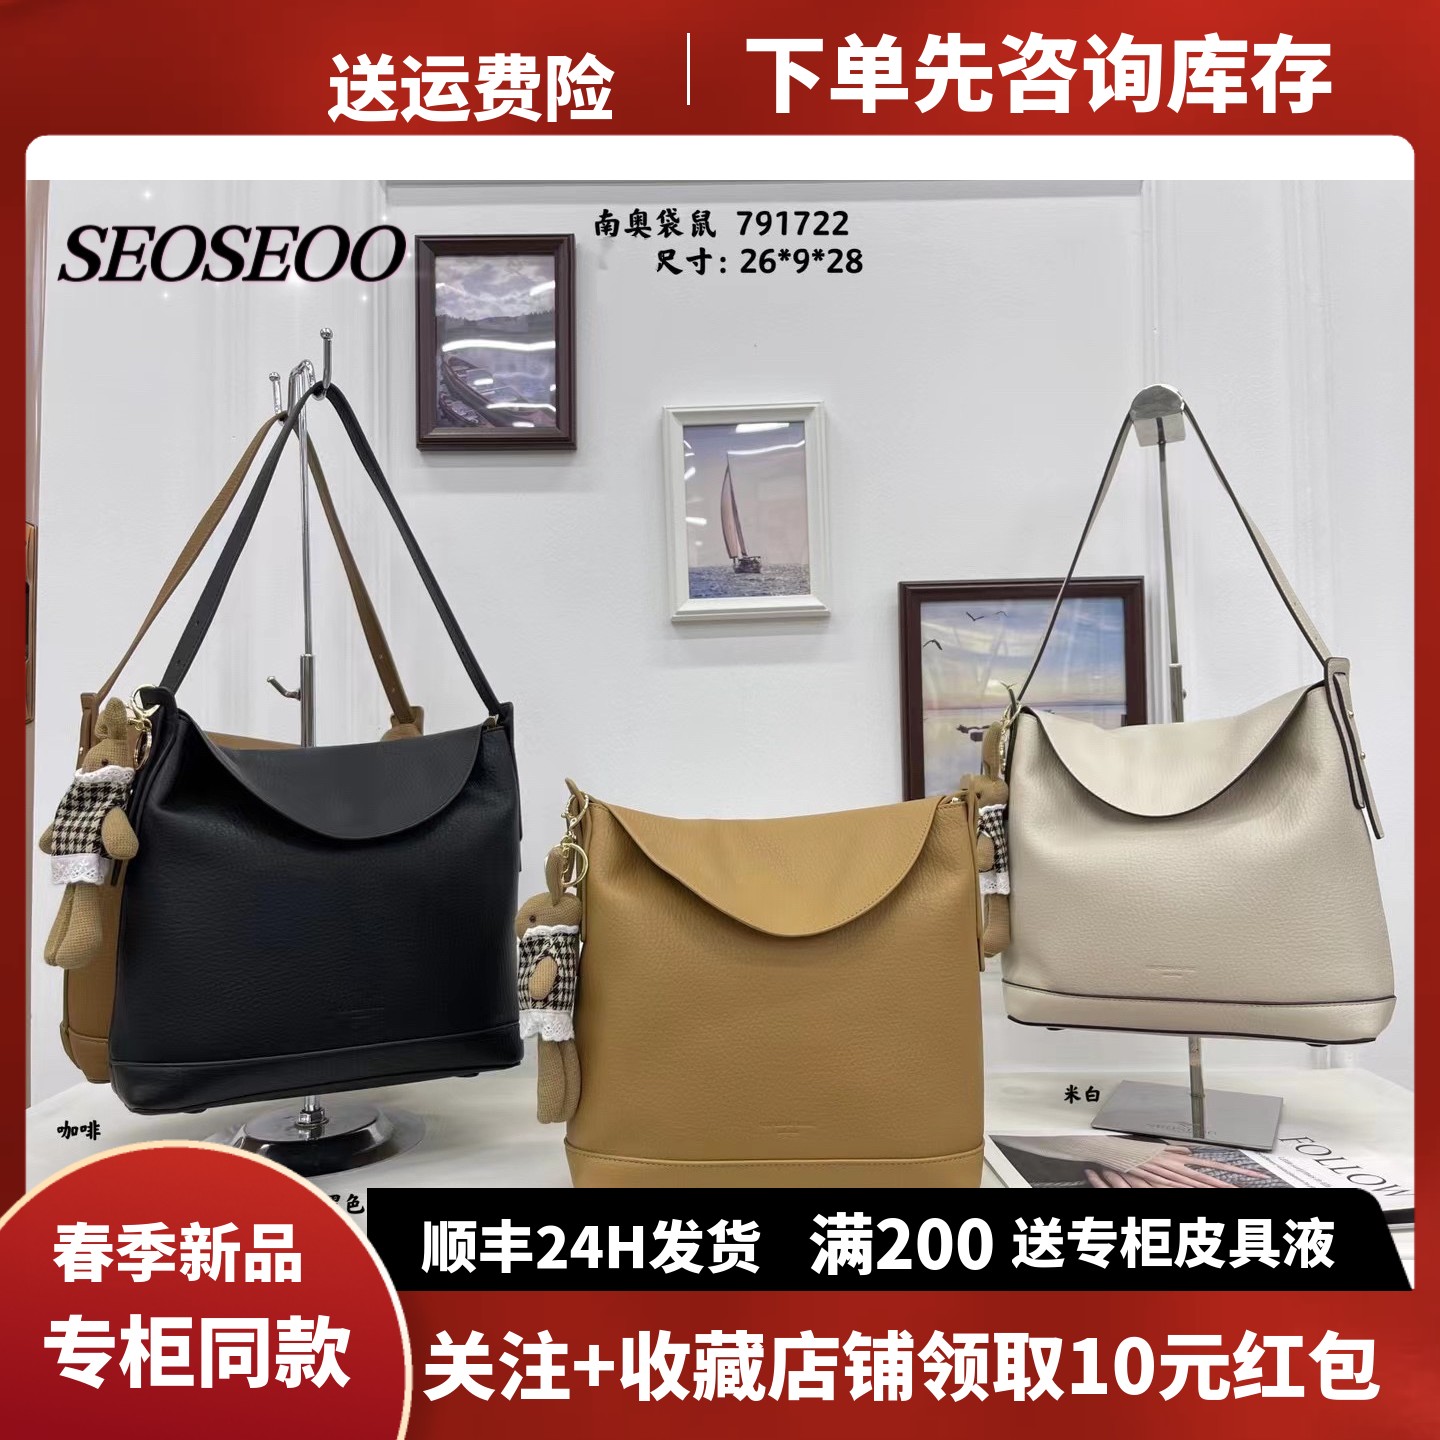 SEOSEOO南奥袋鼠791722韩系水桶包新款时尚慵懒风休闲大包大容量